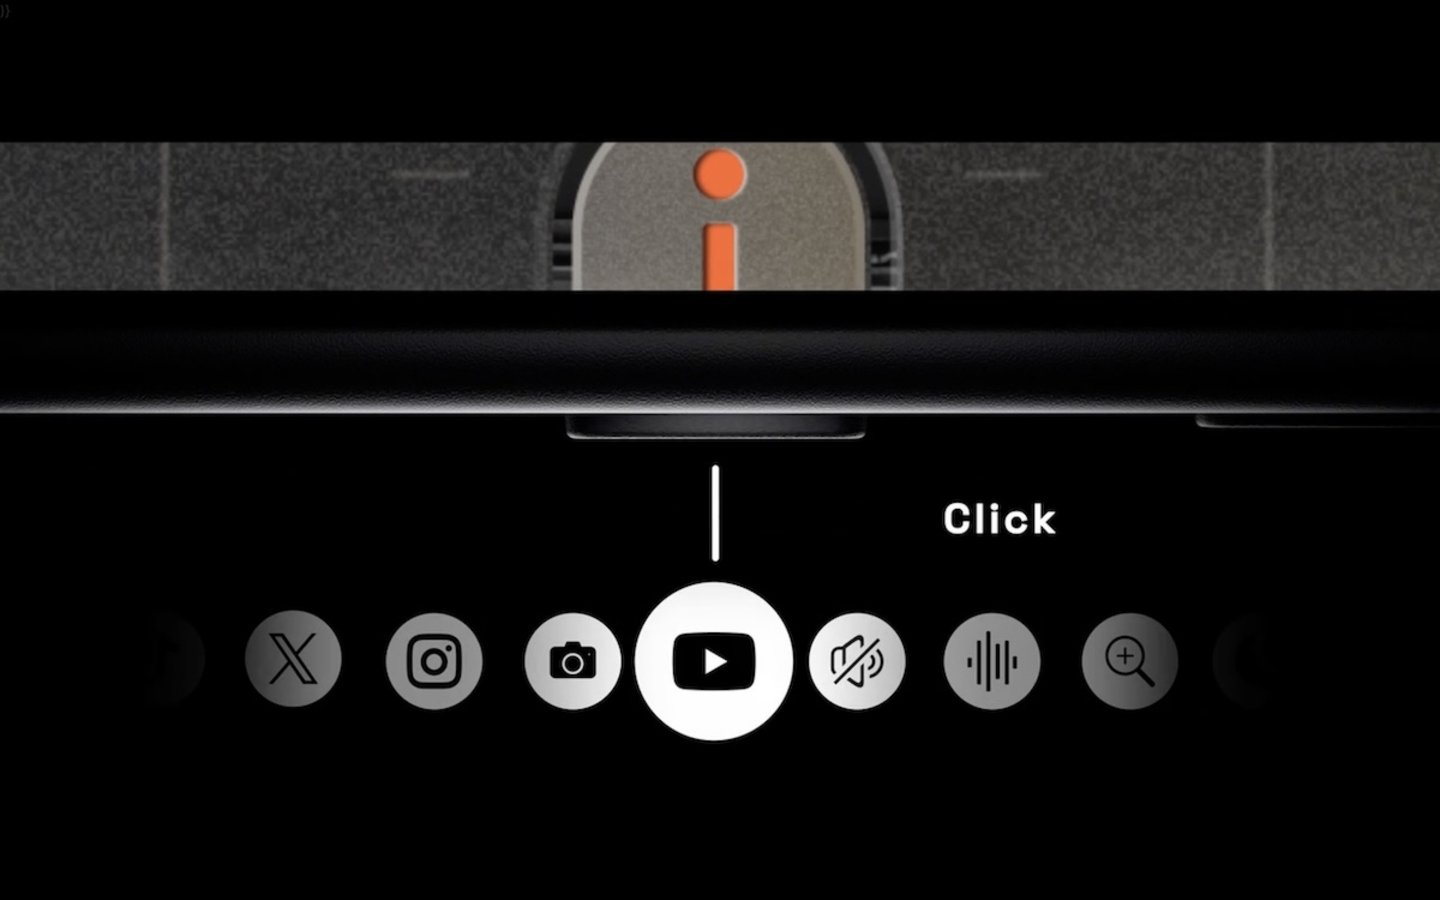 Más personalizaciones y modos de pulsaciones con la funda BANG que incluye su propio botón de acción para iPhone